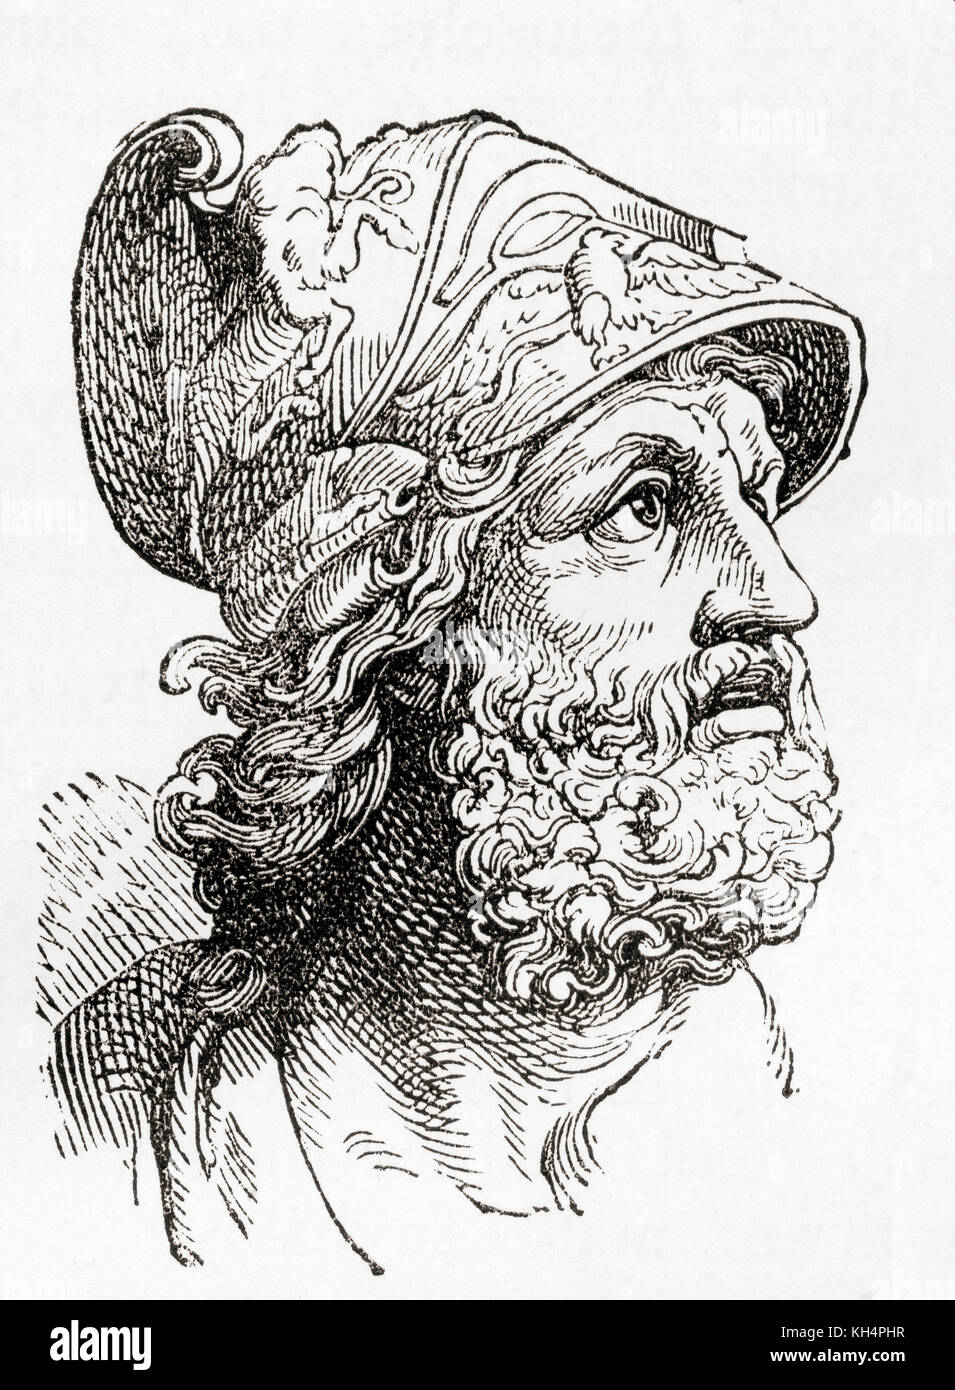 Menelaus. Nach der griechischen Mythologie war Menelaus ein König von mykenischen (vordorianischen) Sparta und Ehemann von Helen von Troja. Aus Ward and Lock's Illustrated History of the World, veröffentlicht um 1882. Stockfoto